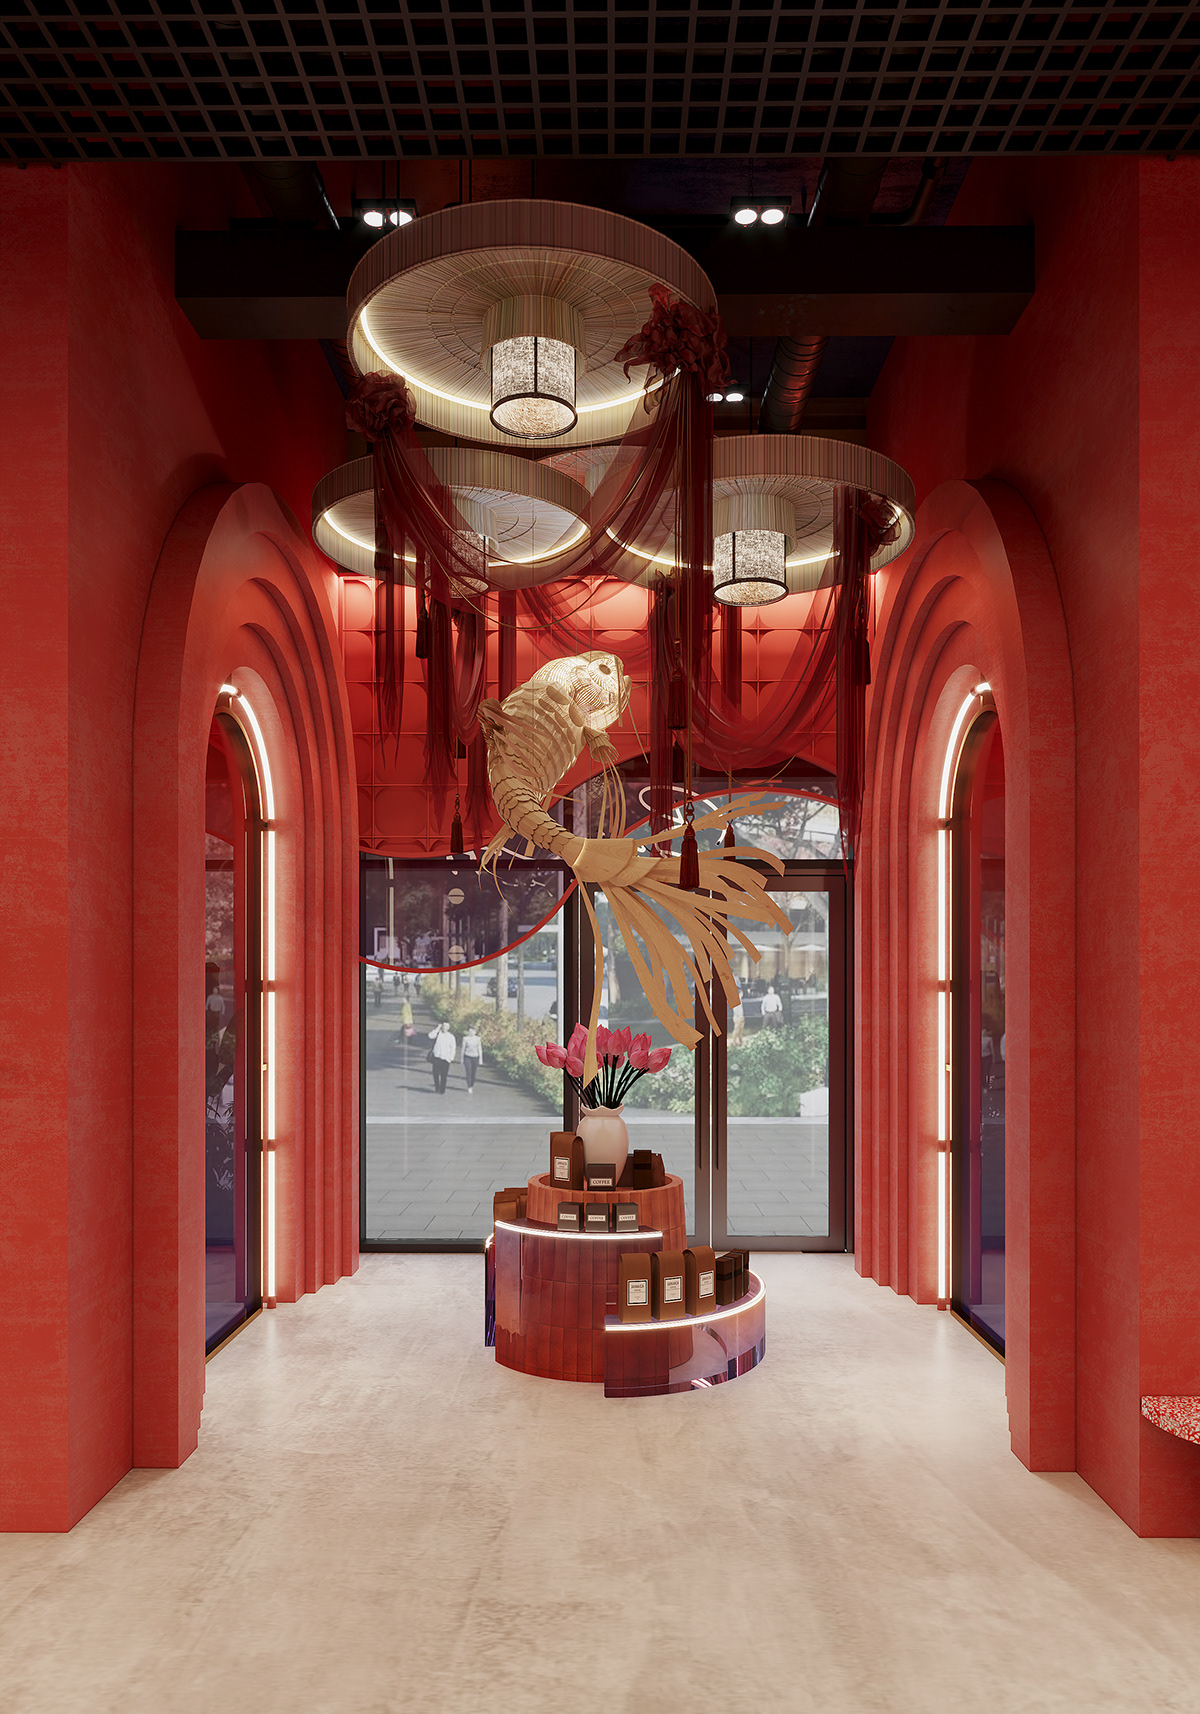 Coffee interior design  Interior architecture contemporary modern visualization 3ds max Render store